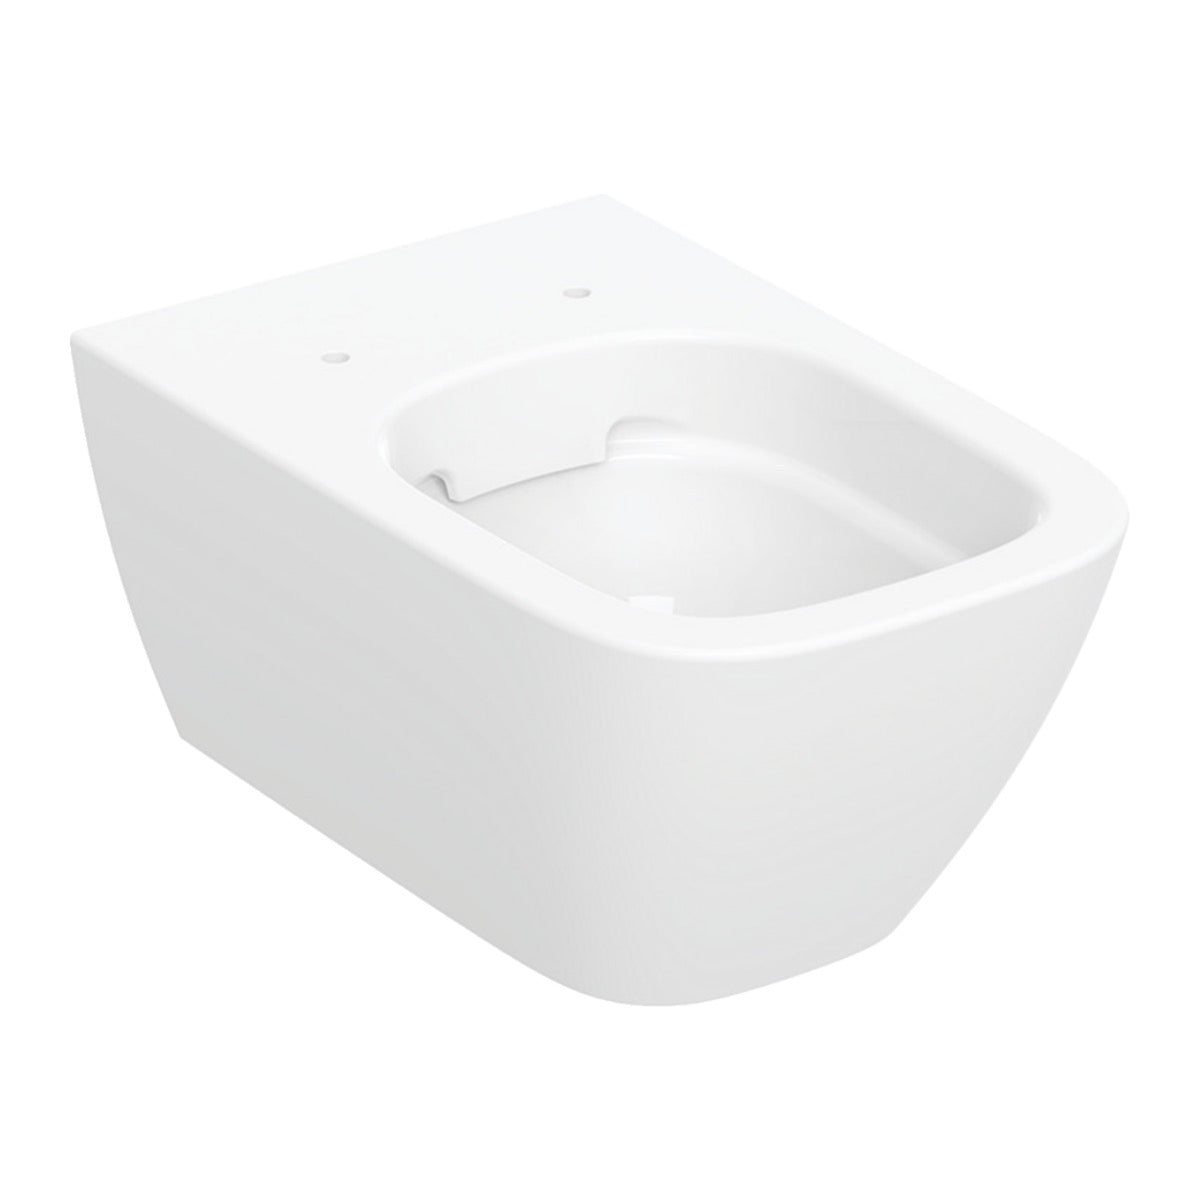 KOGEGESSD20CR Geberit Smyle Square WC školjka s podometnim splakovalnikom Geberit Duofix 458.103.00.1 Delta20